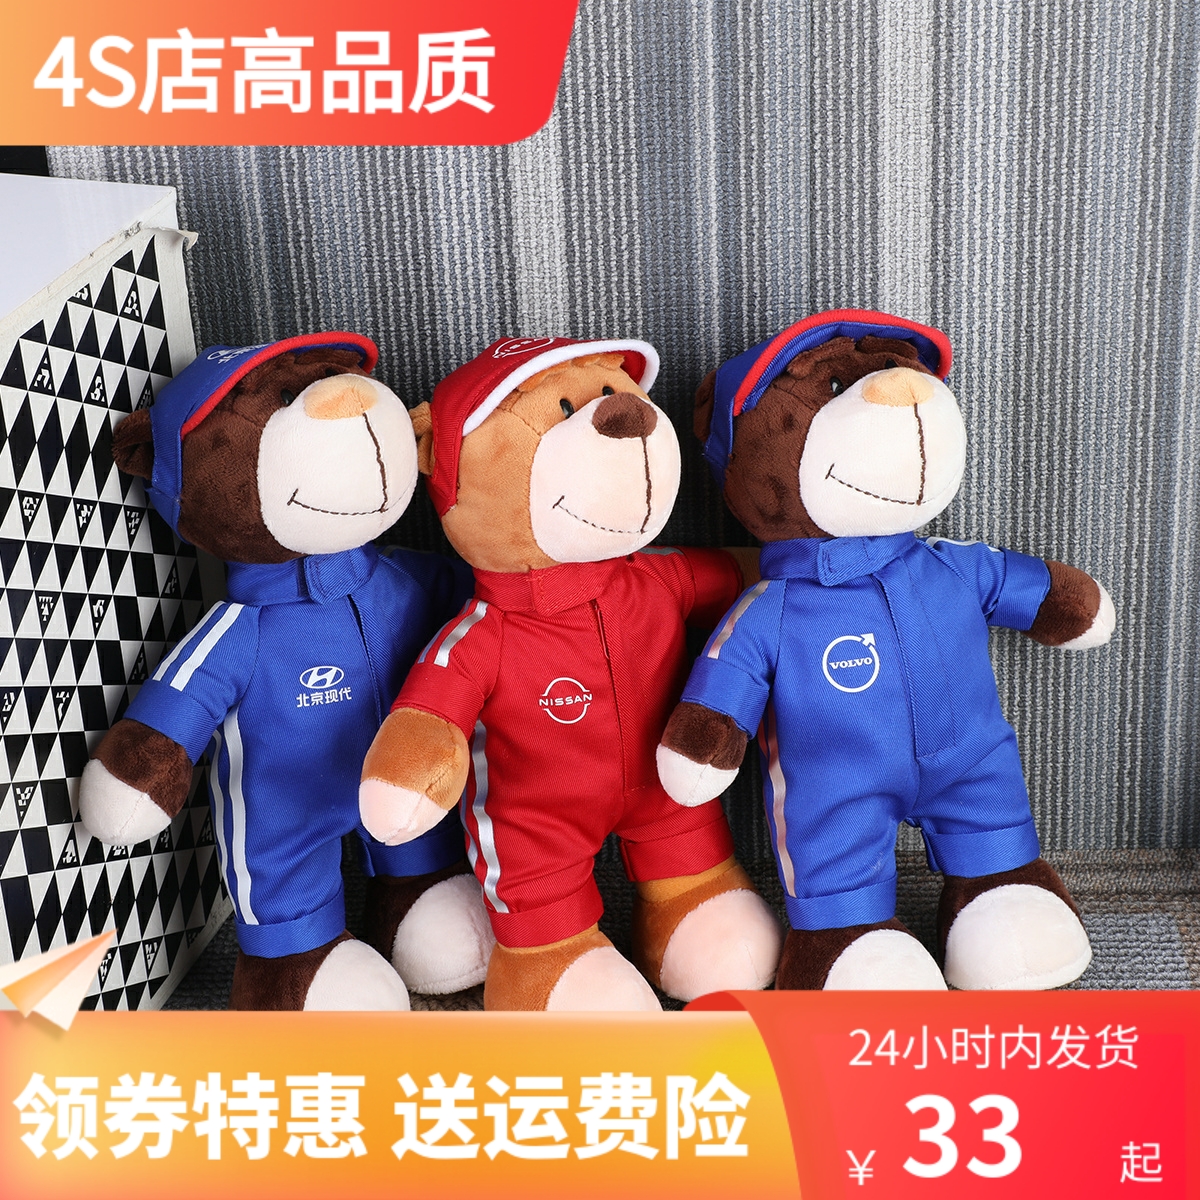 4S店定制日产 沃尔沃北京现代泰迪小熊 毛绒公仔购车礼品娃娃玩偶